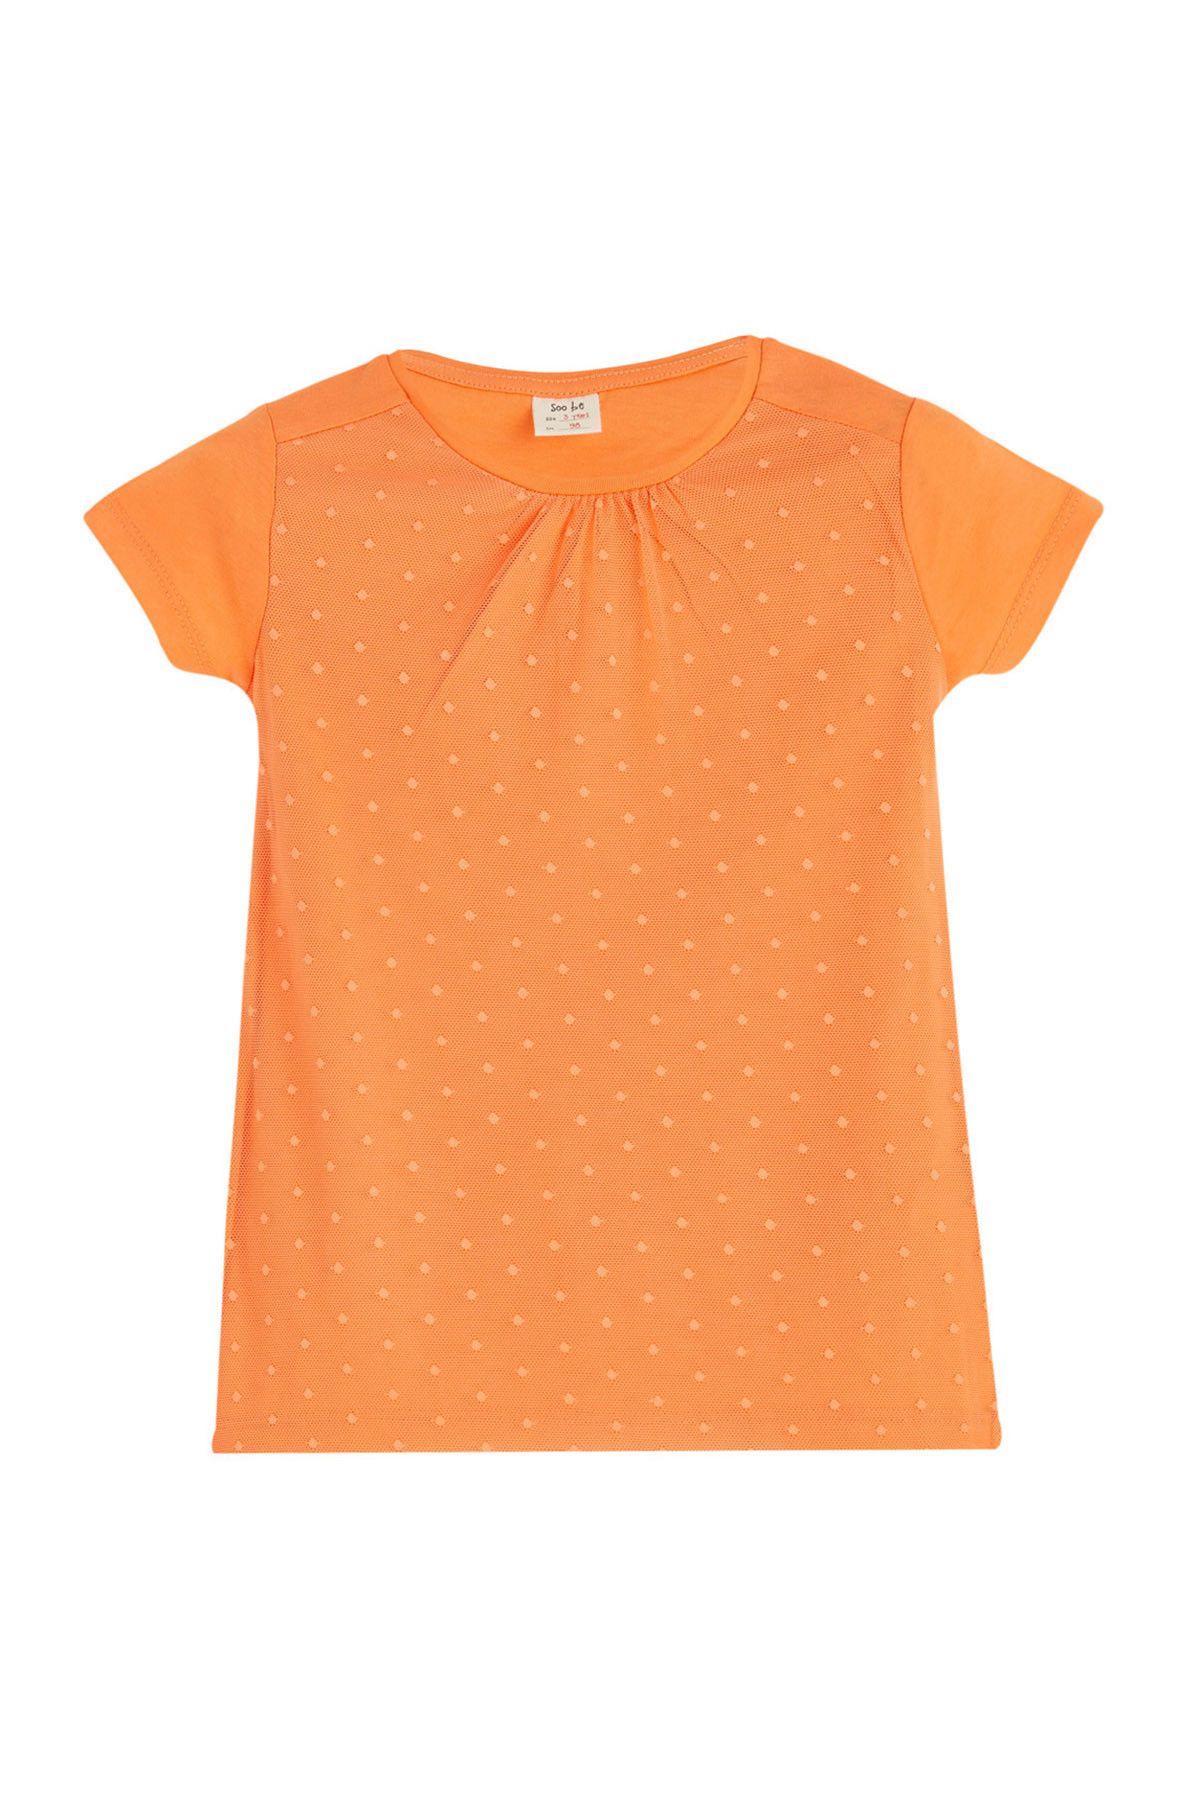 Soobe Apricot Kız Çocuk T-Shirt